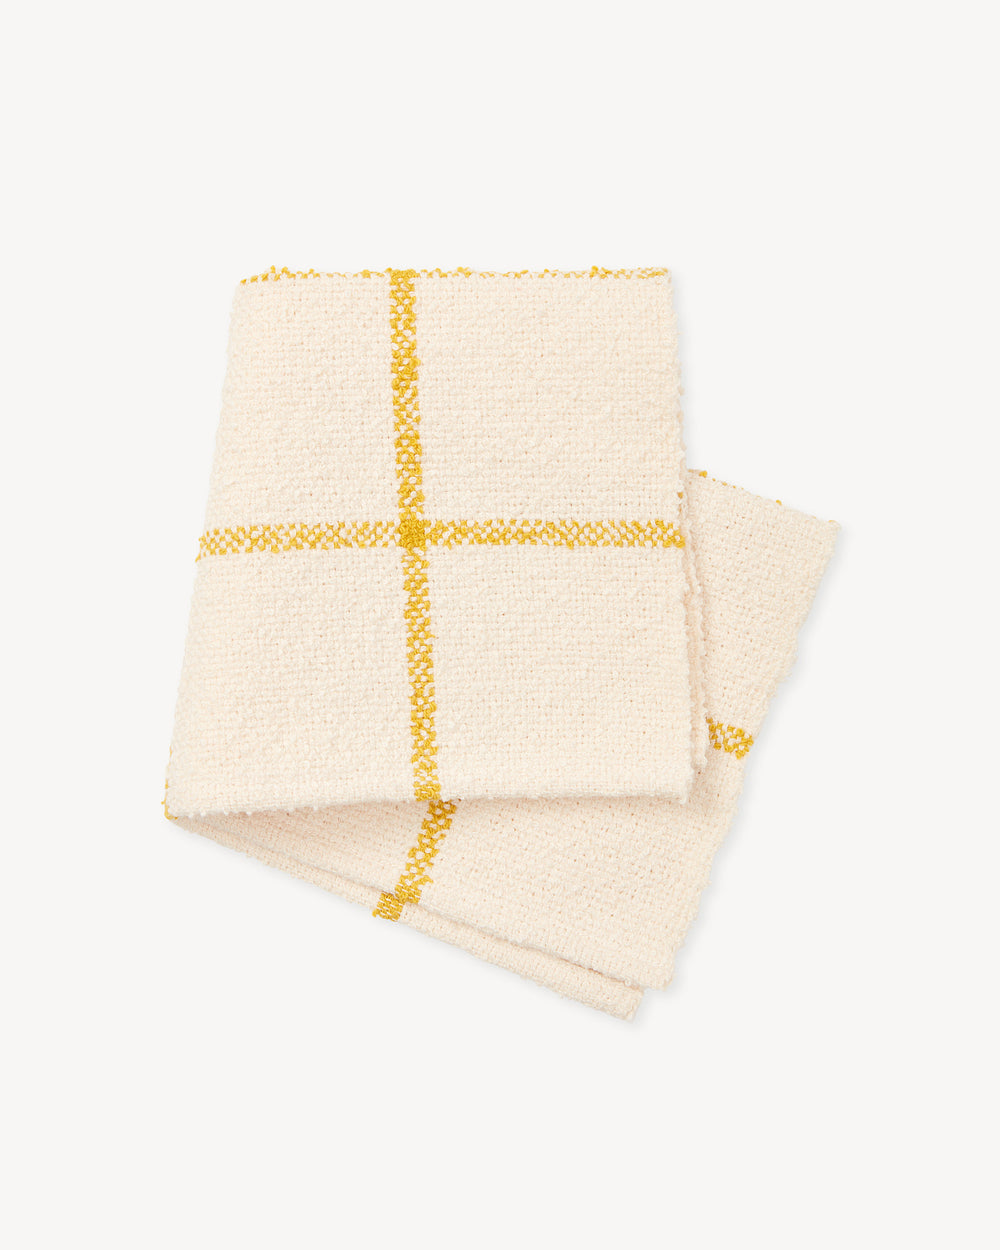 Everyday Washcloth - Goldenrod